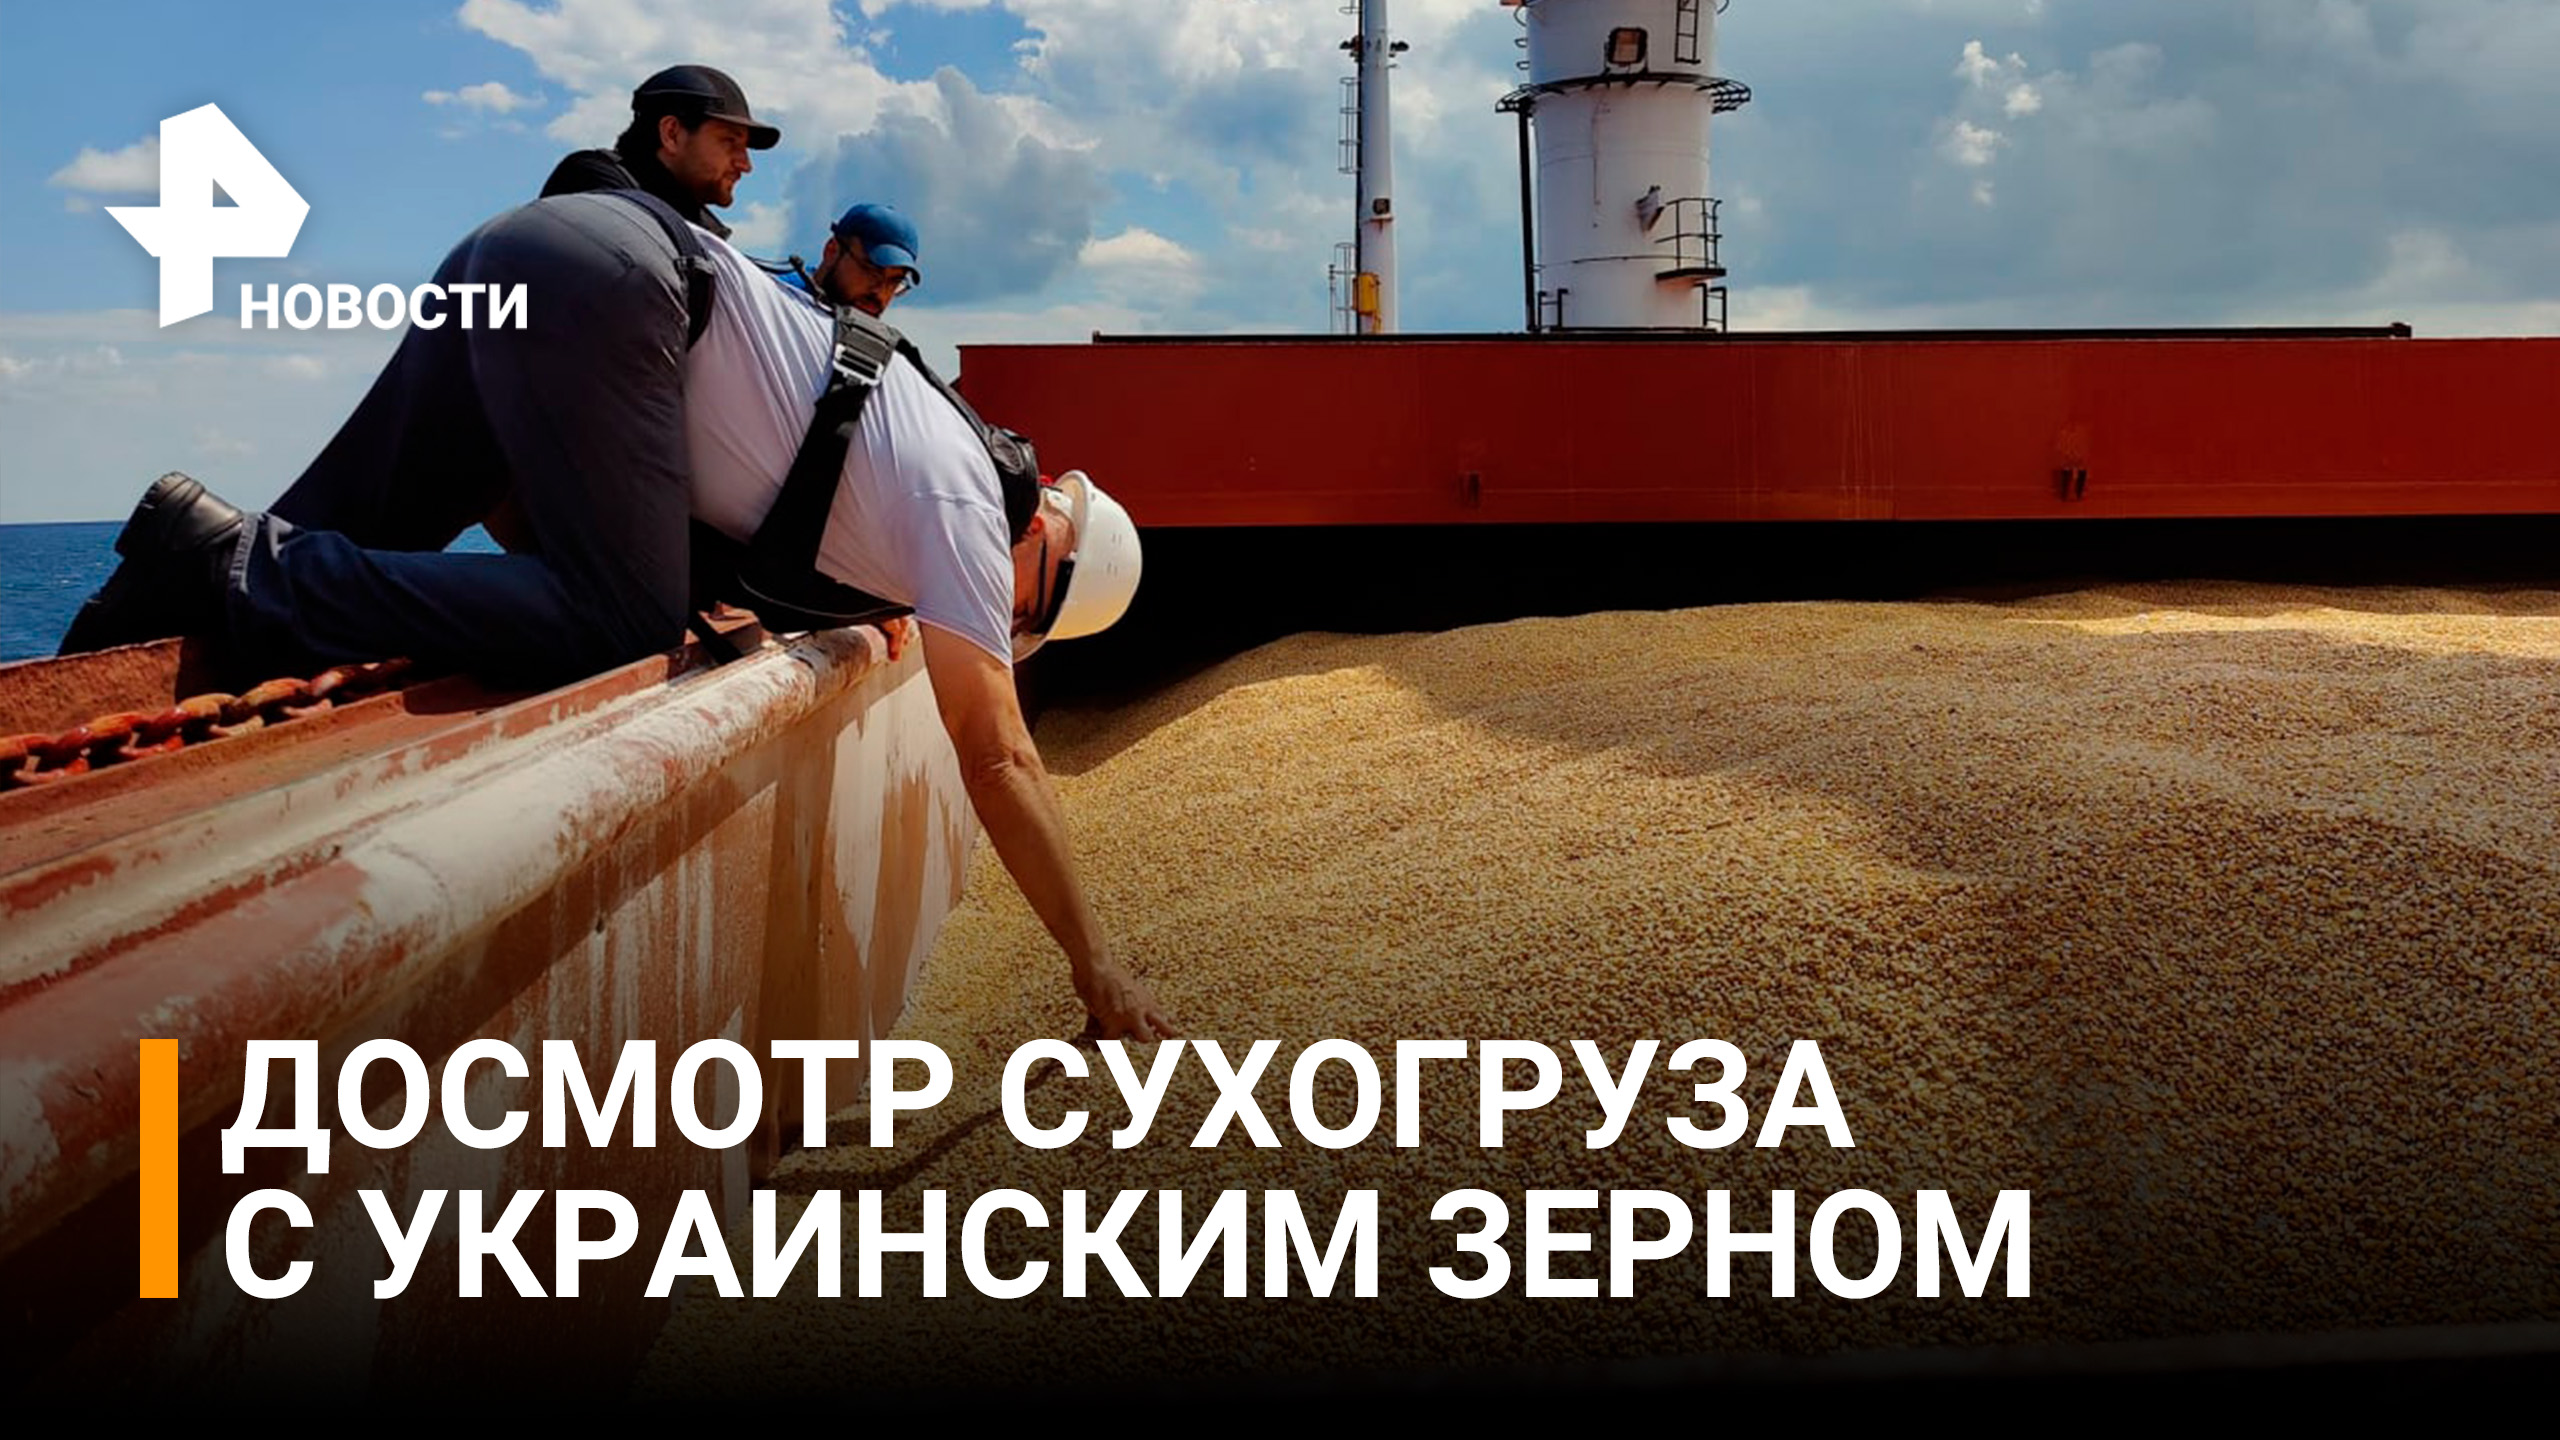 Первый сухогруз с украинской кукурузой досмотрели в Стамбуле / РЕН Новости